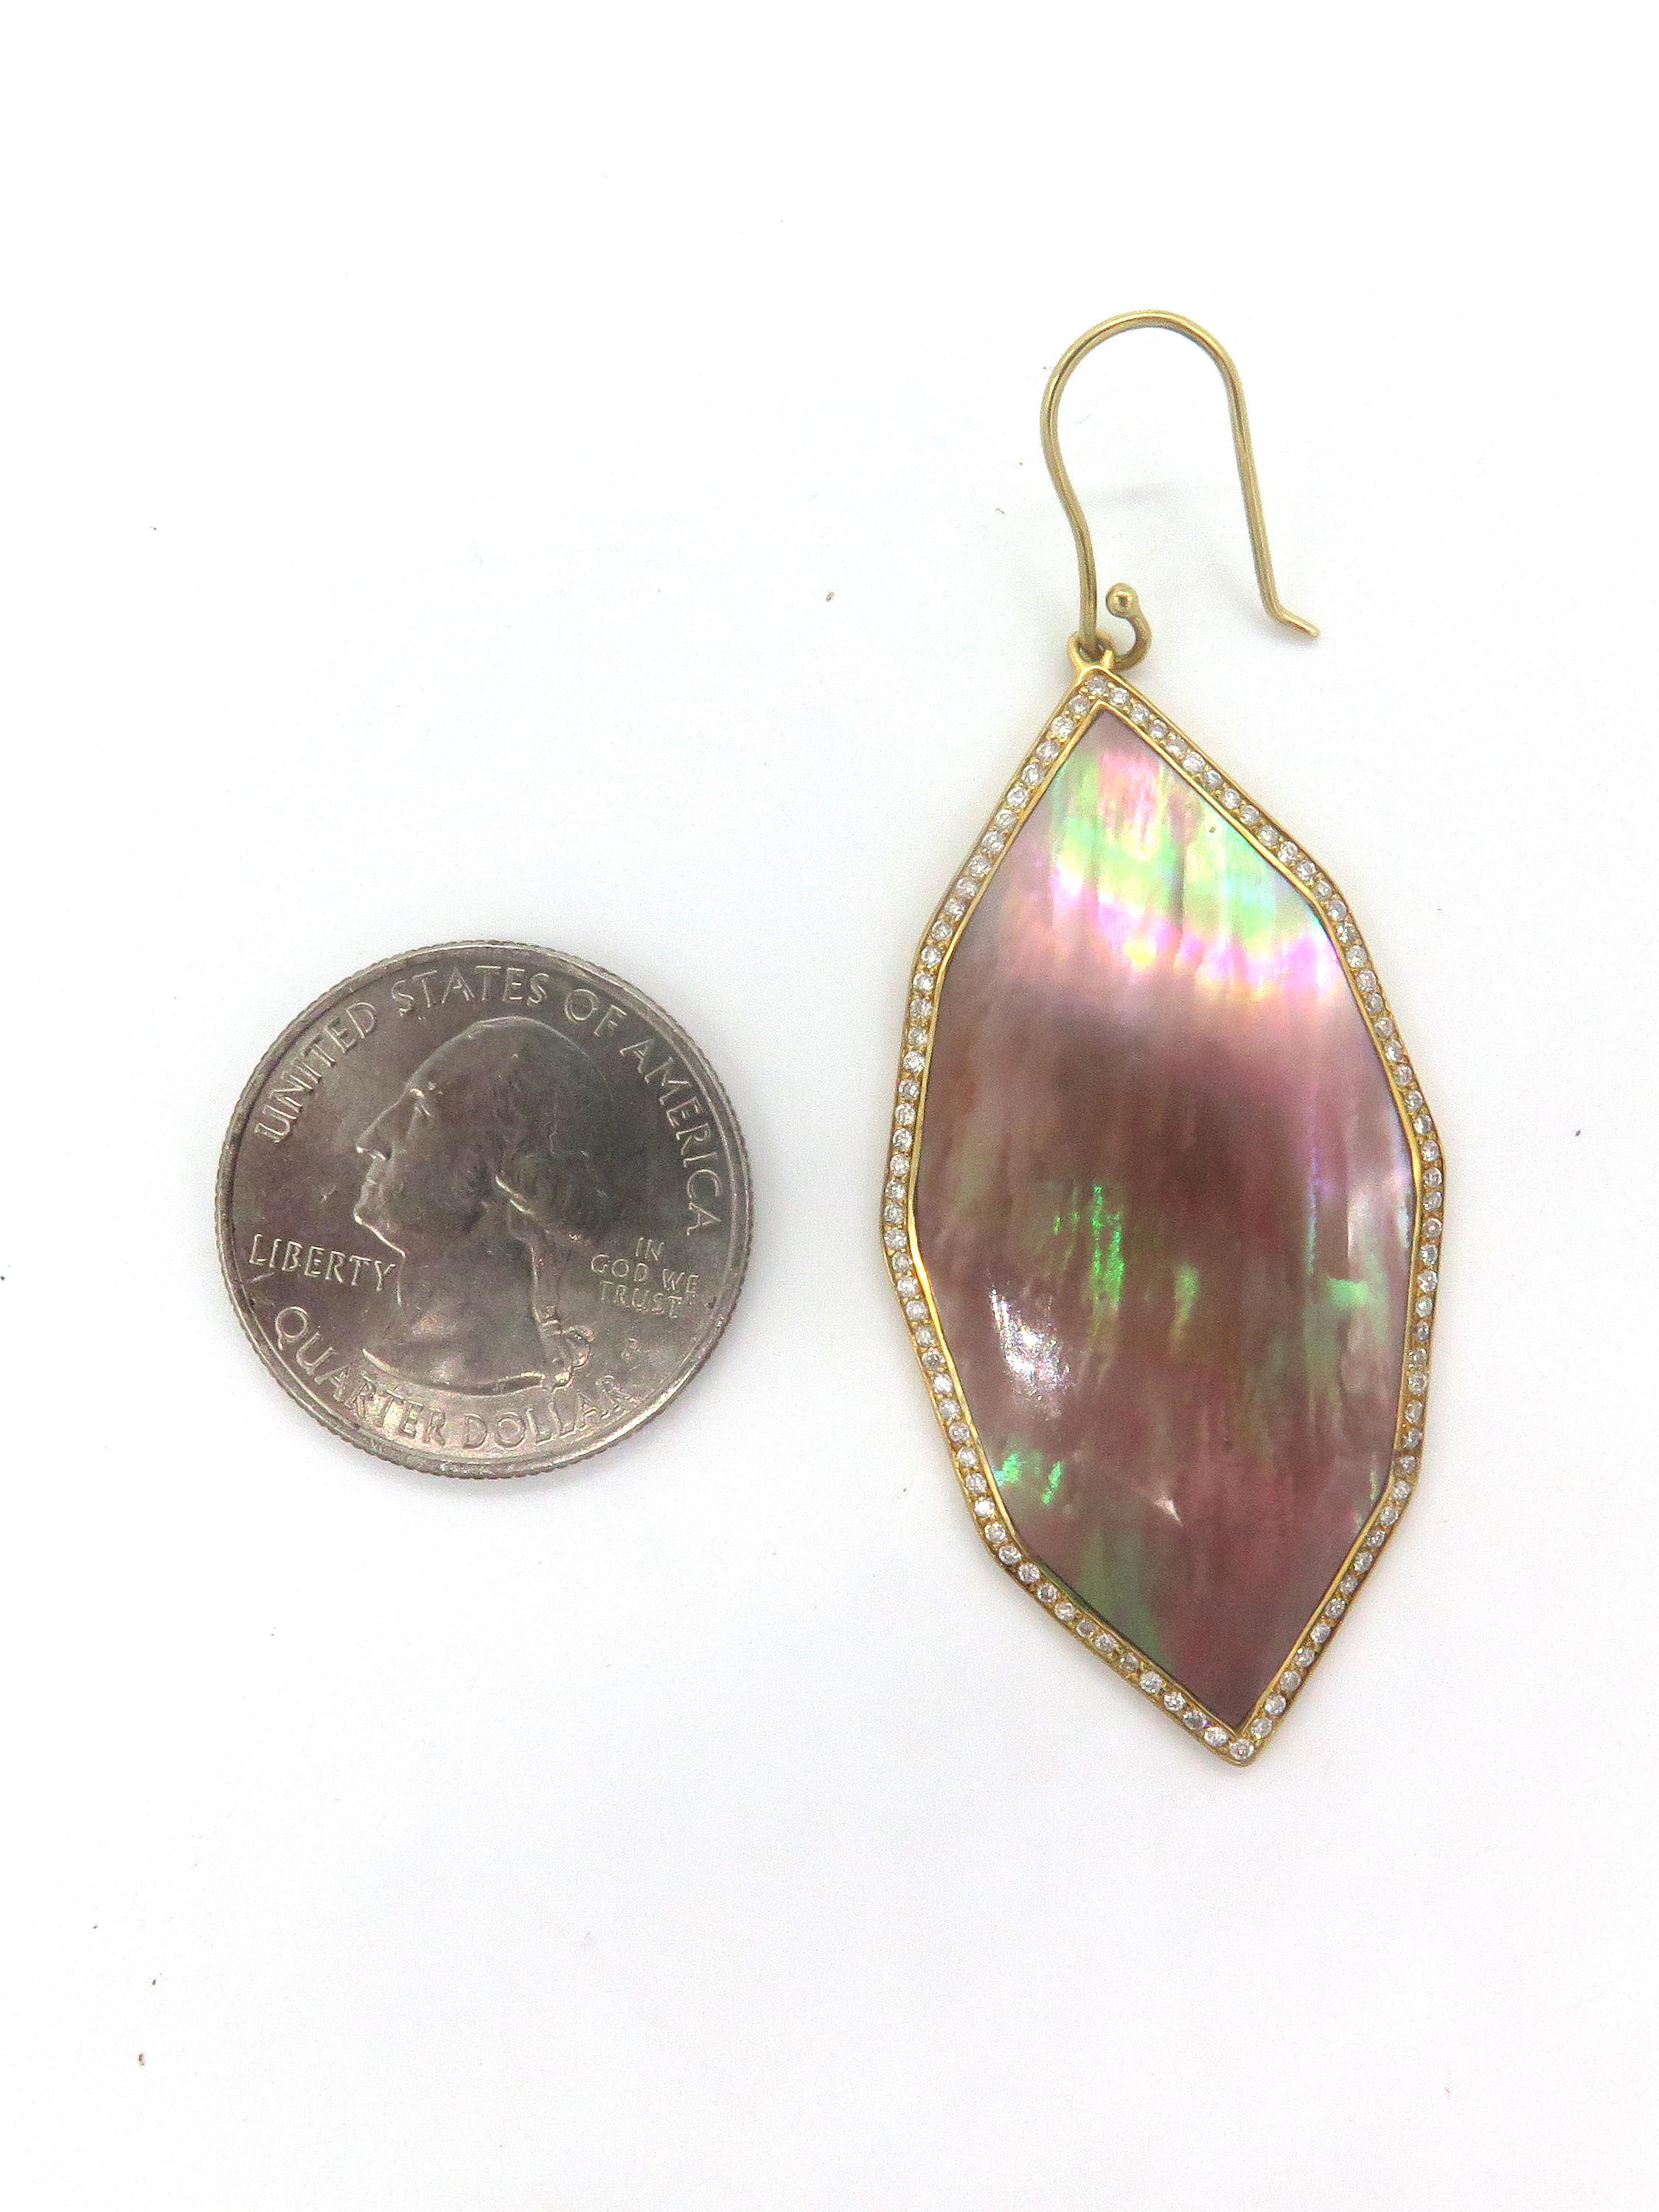 ippolita rose gold earrings